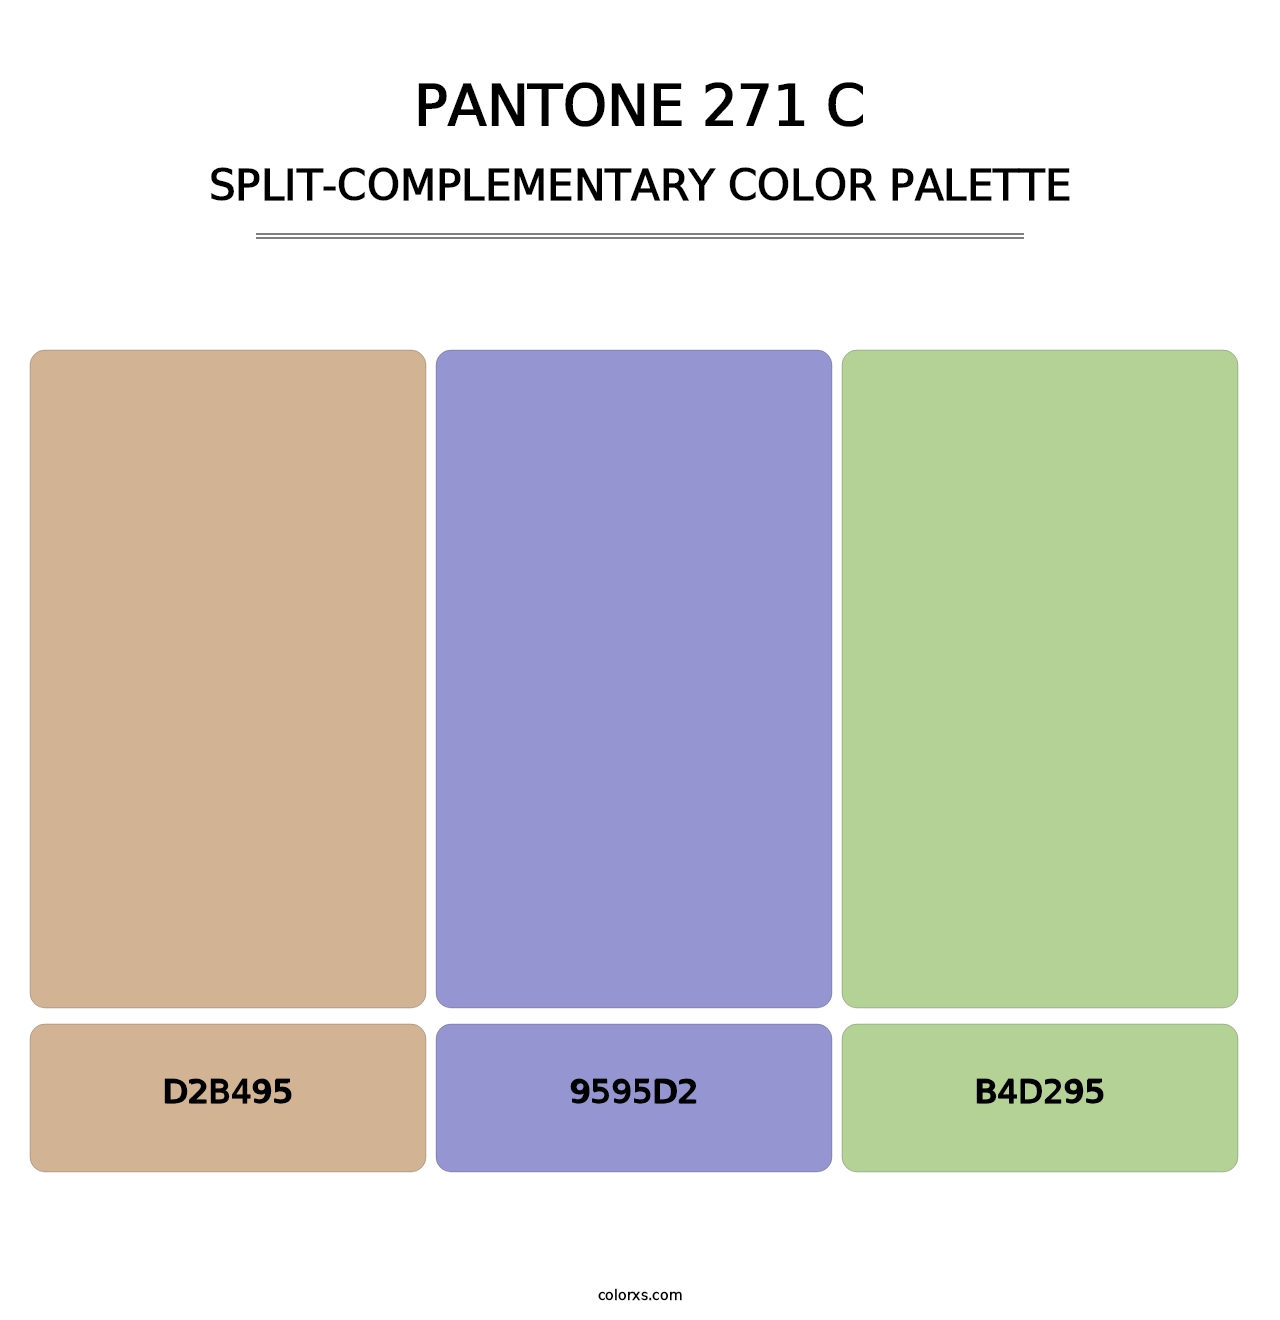 PANTONE 271 C - Split-Complementary Color Palette